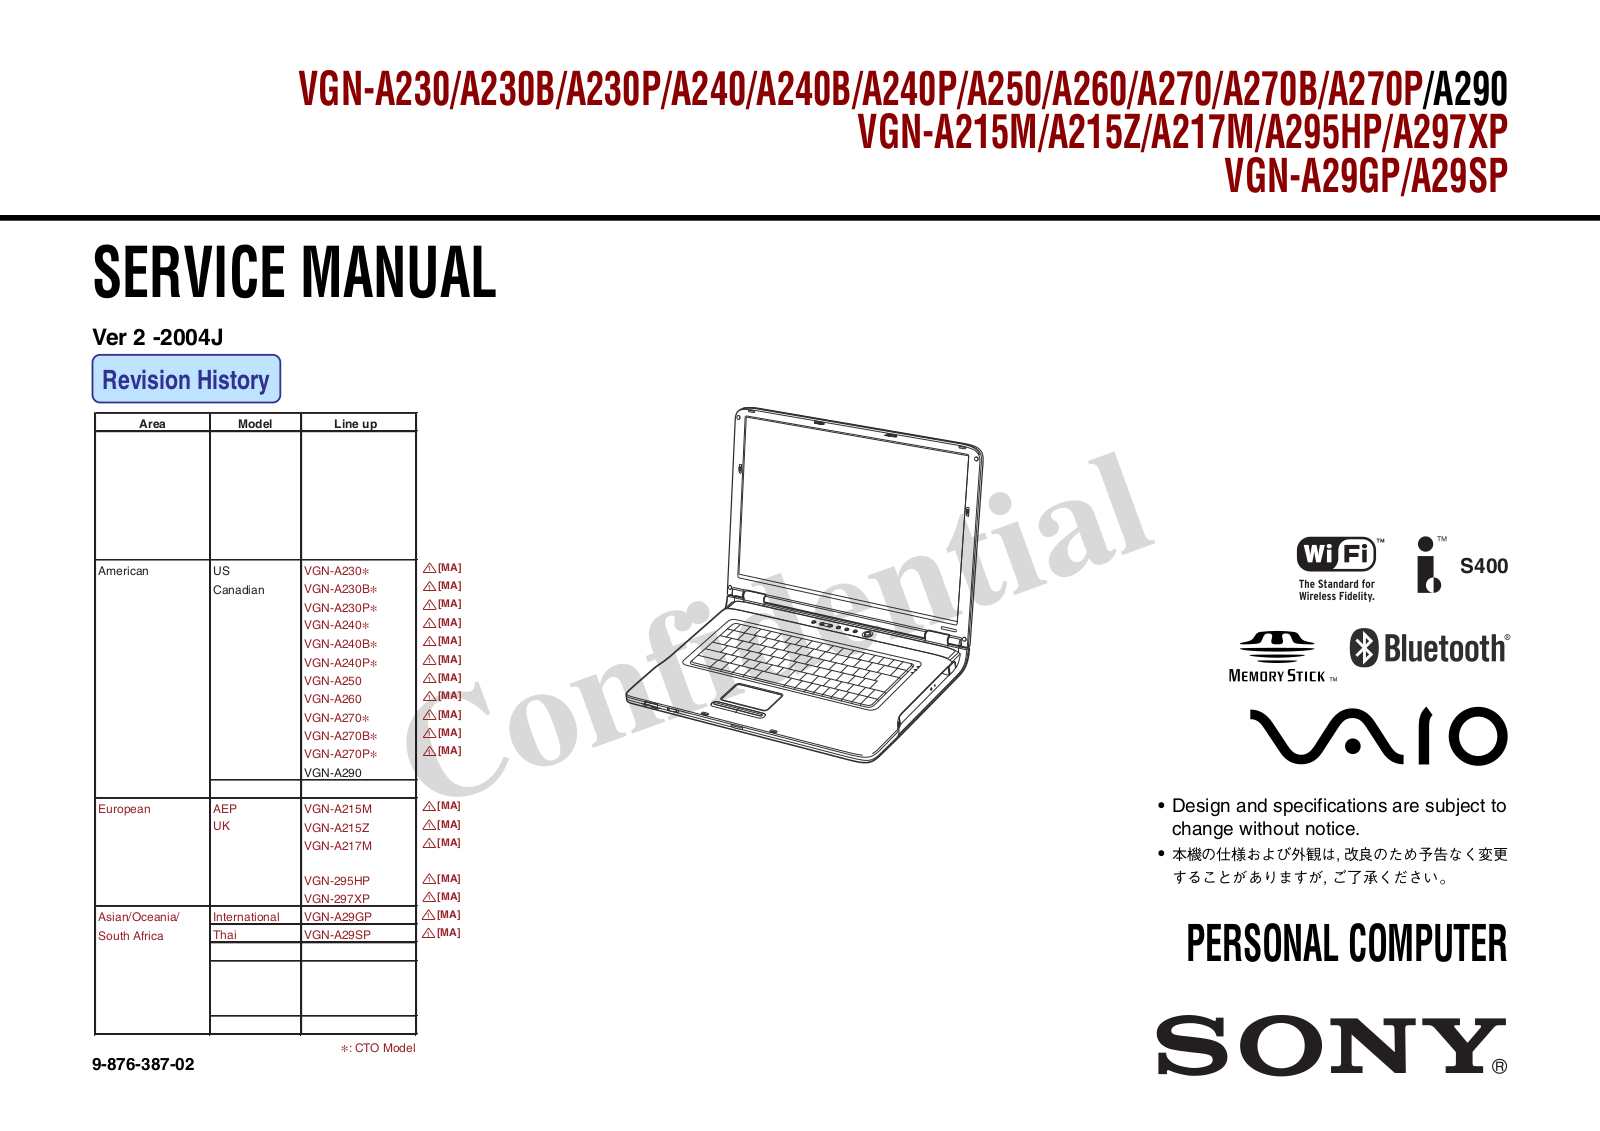 SONY VGN-230, VGN-240, VGN-250, VGN-260, VGN-270 Service Manual